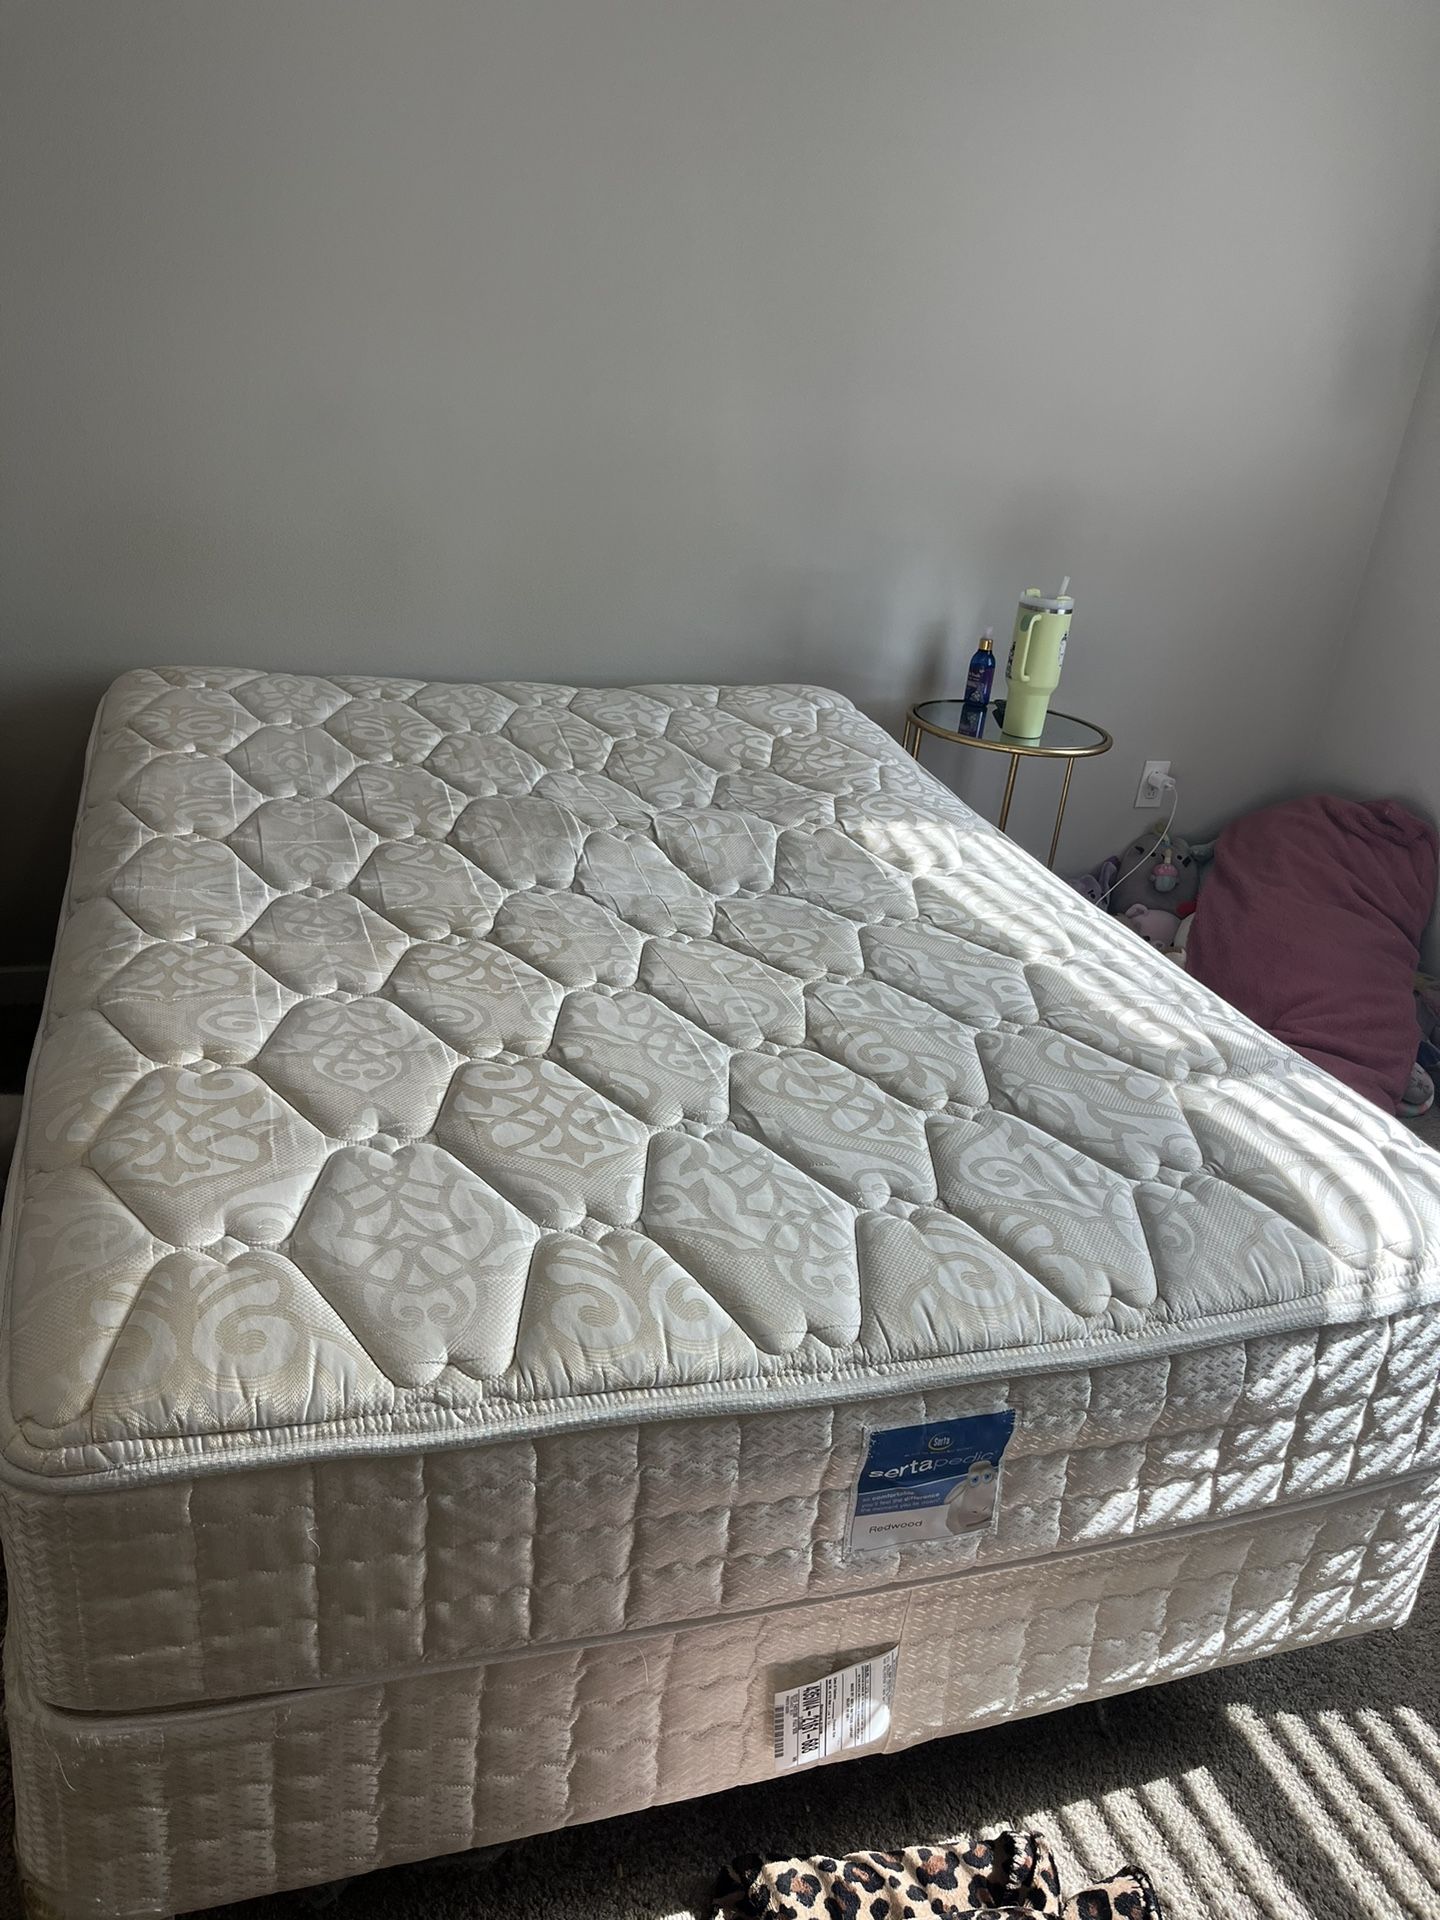 FULL MATTRESS + BOX SPRING+ BED FRAME